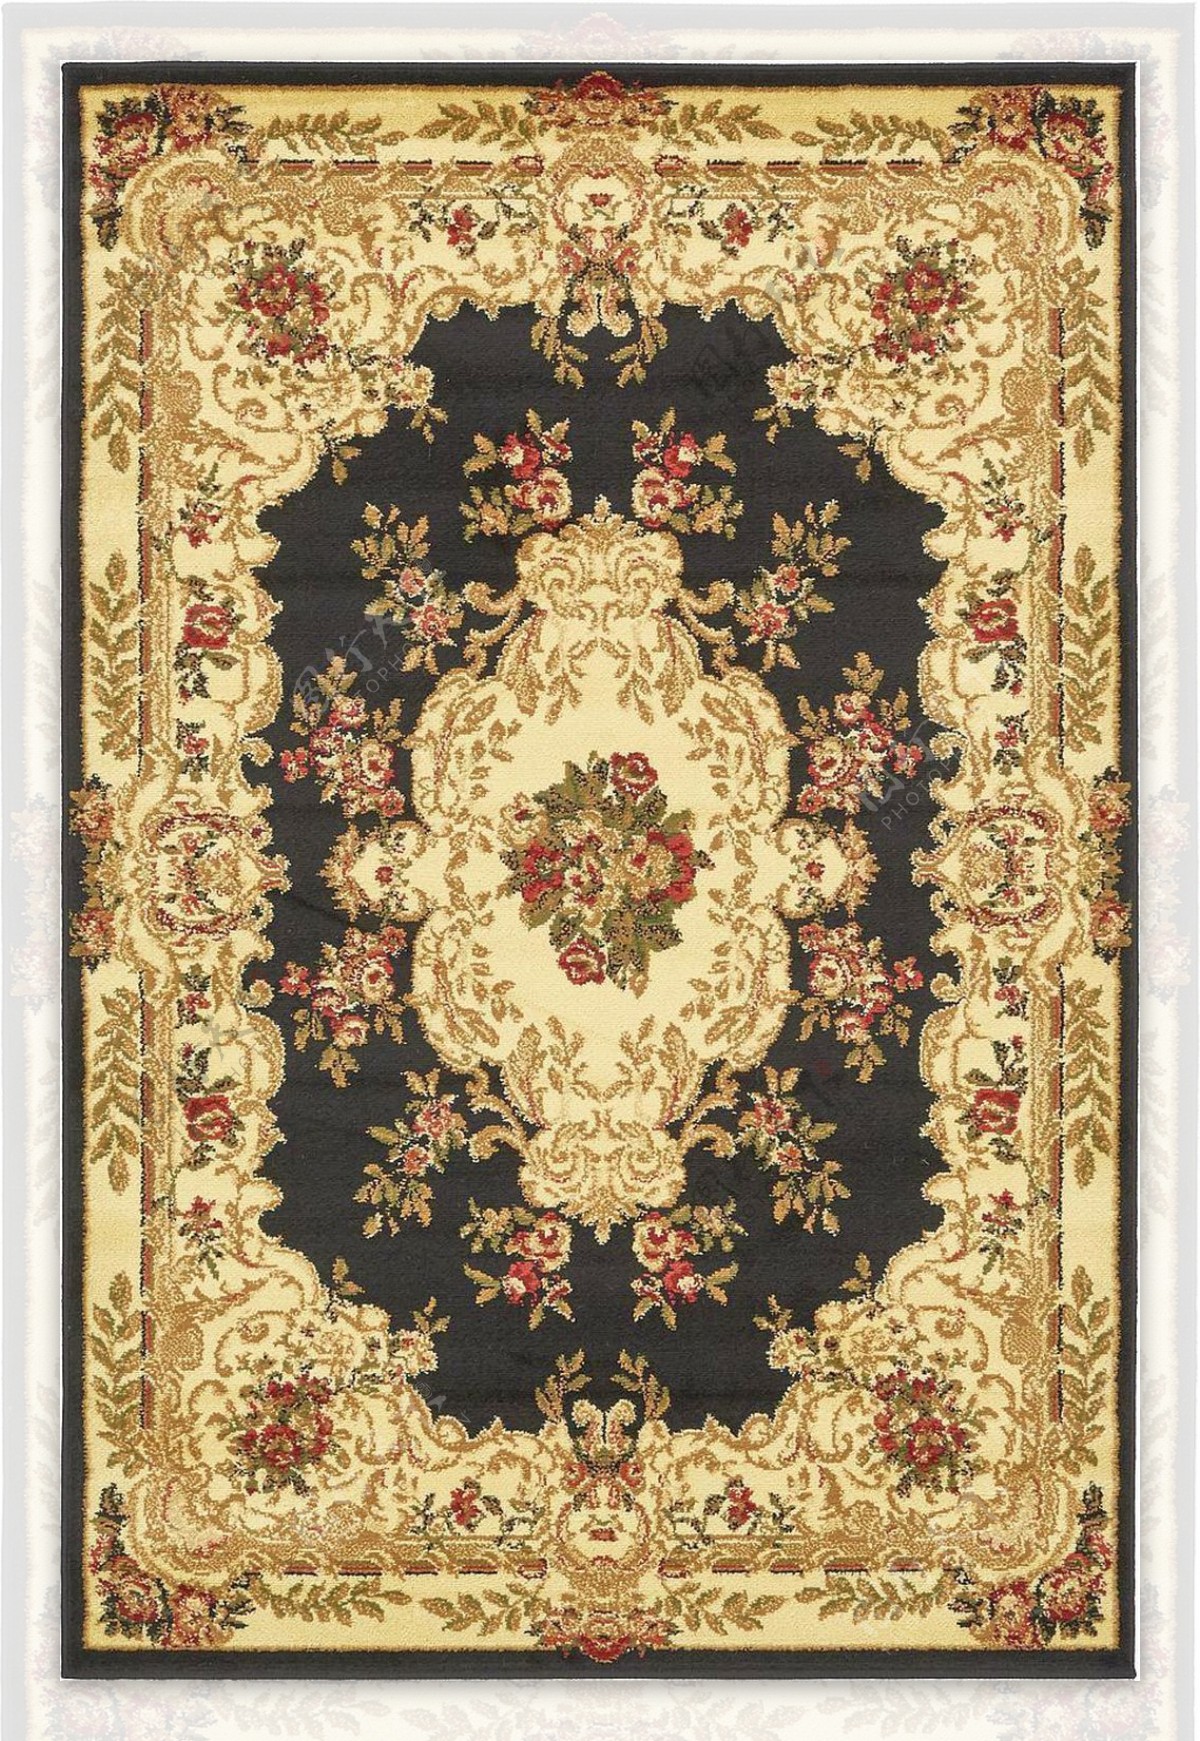 欧式复古花纹地毯拼图花边jpg图片